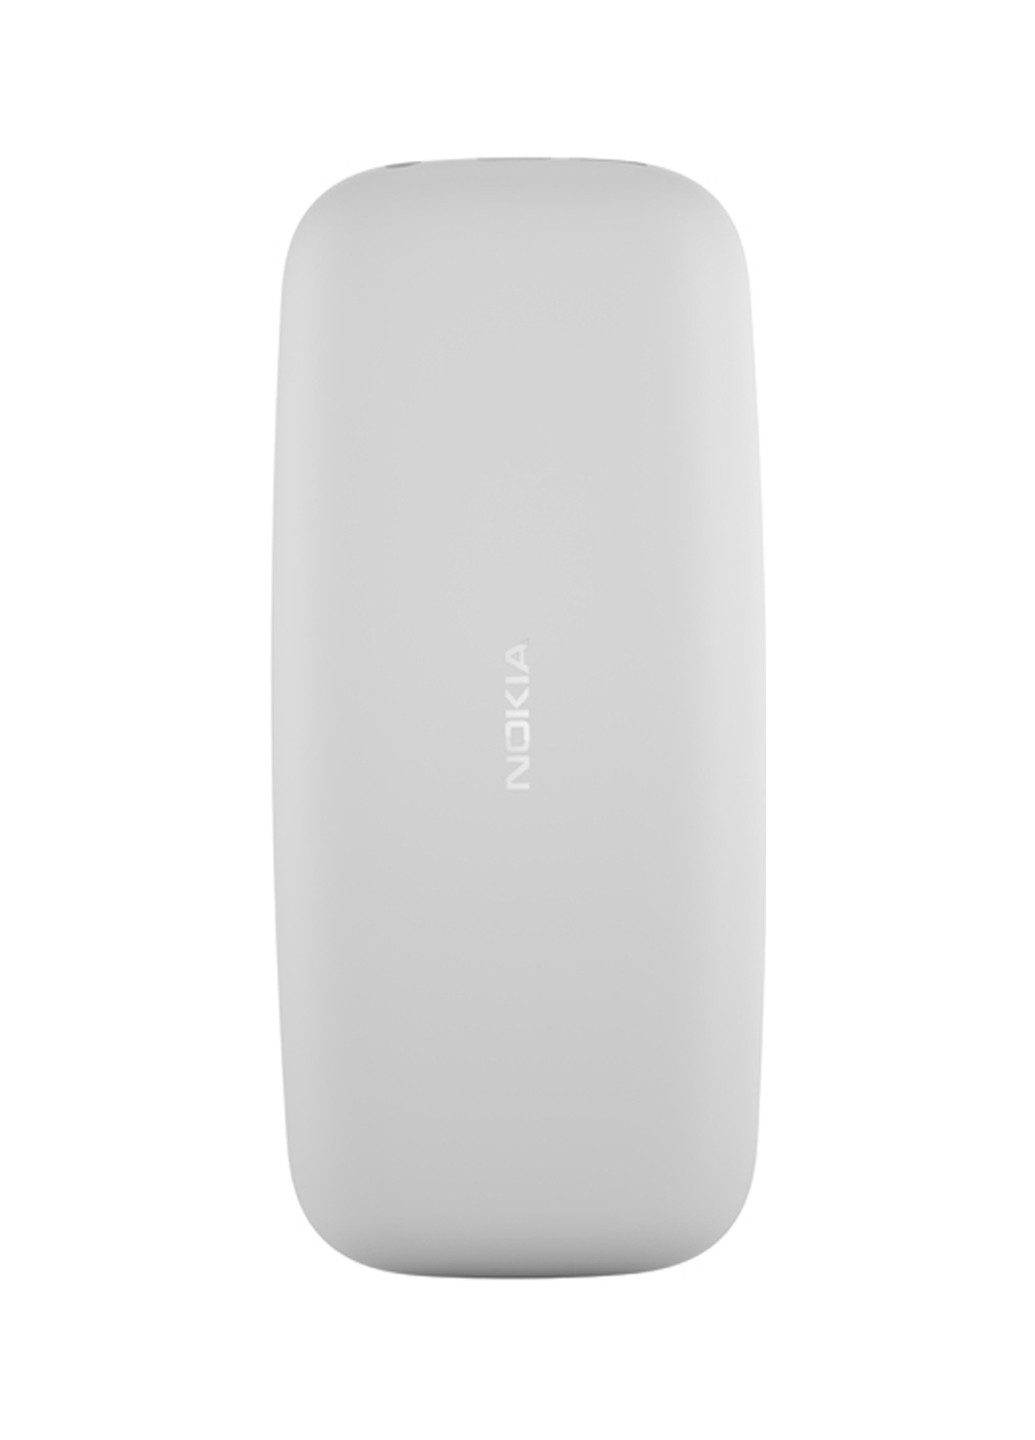 Мобильный телефон Nokia 105 white ta-1010 (130877812)